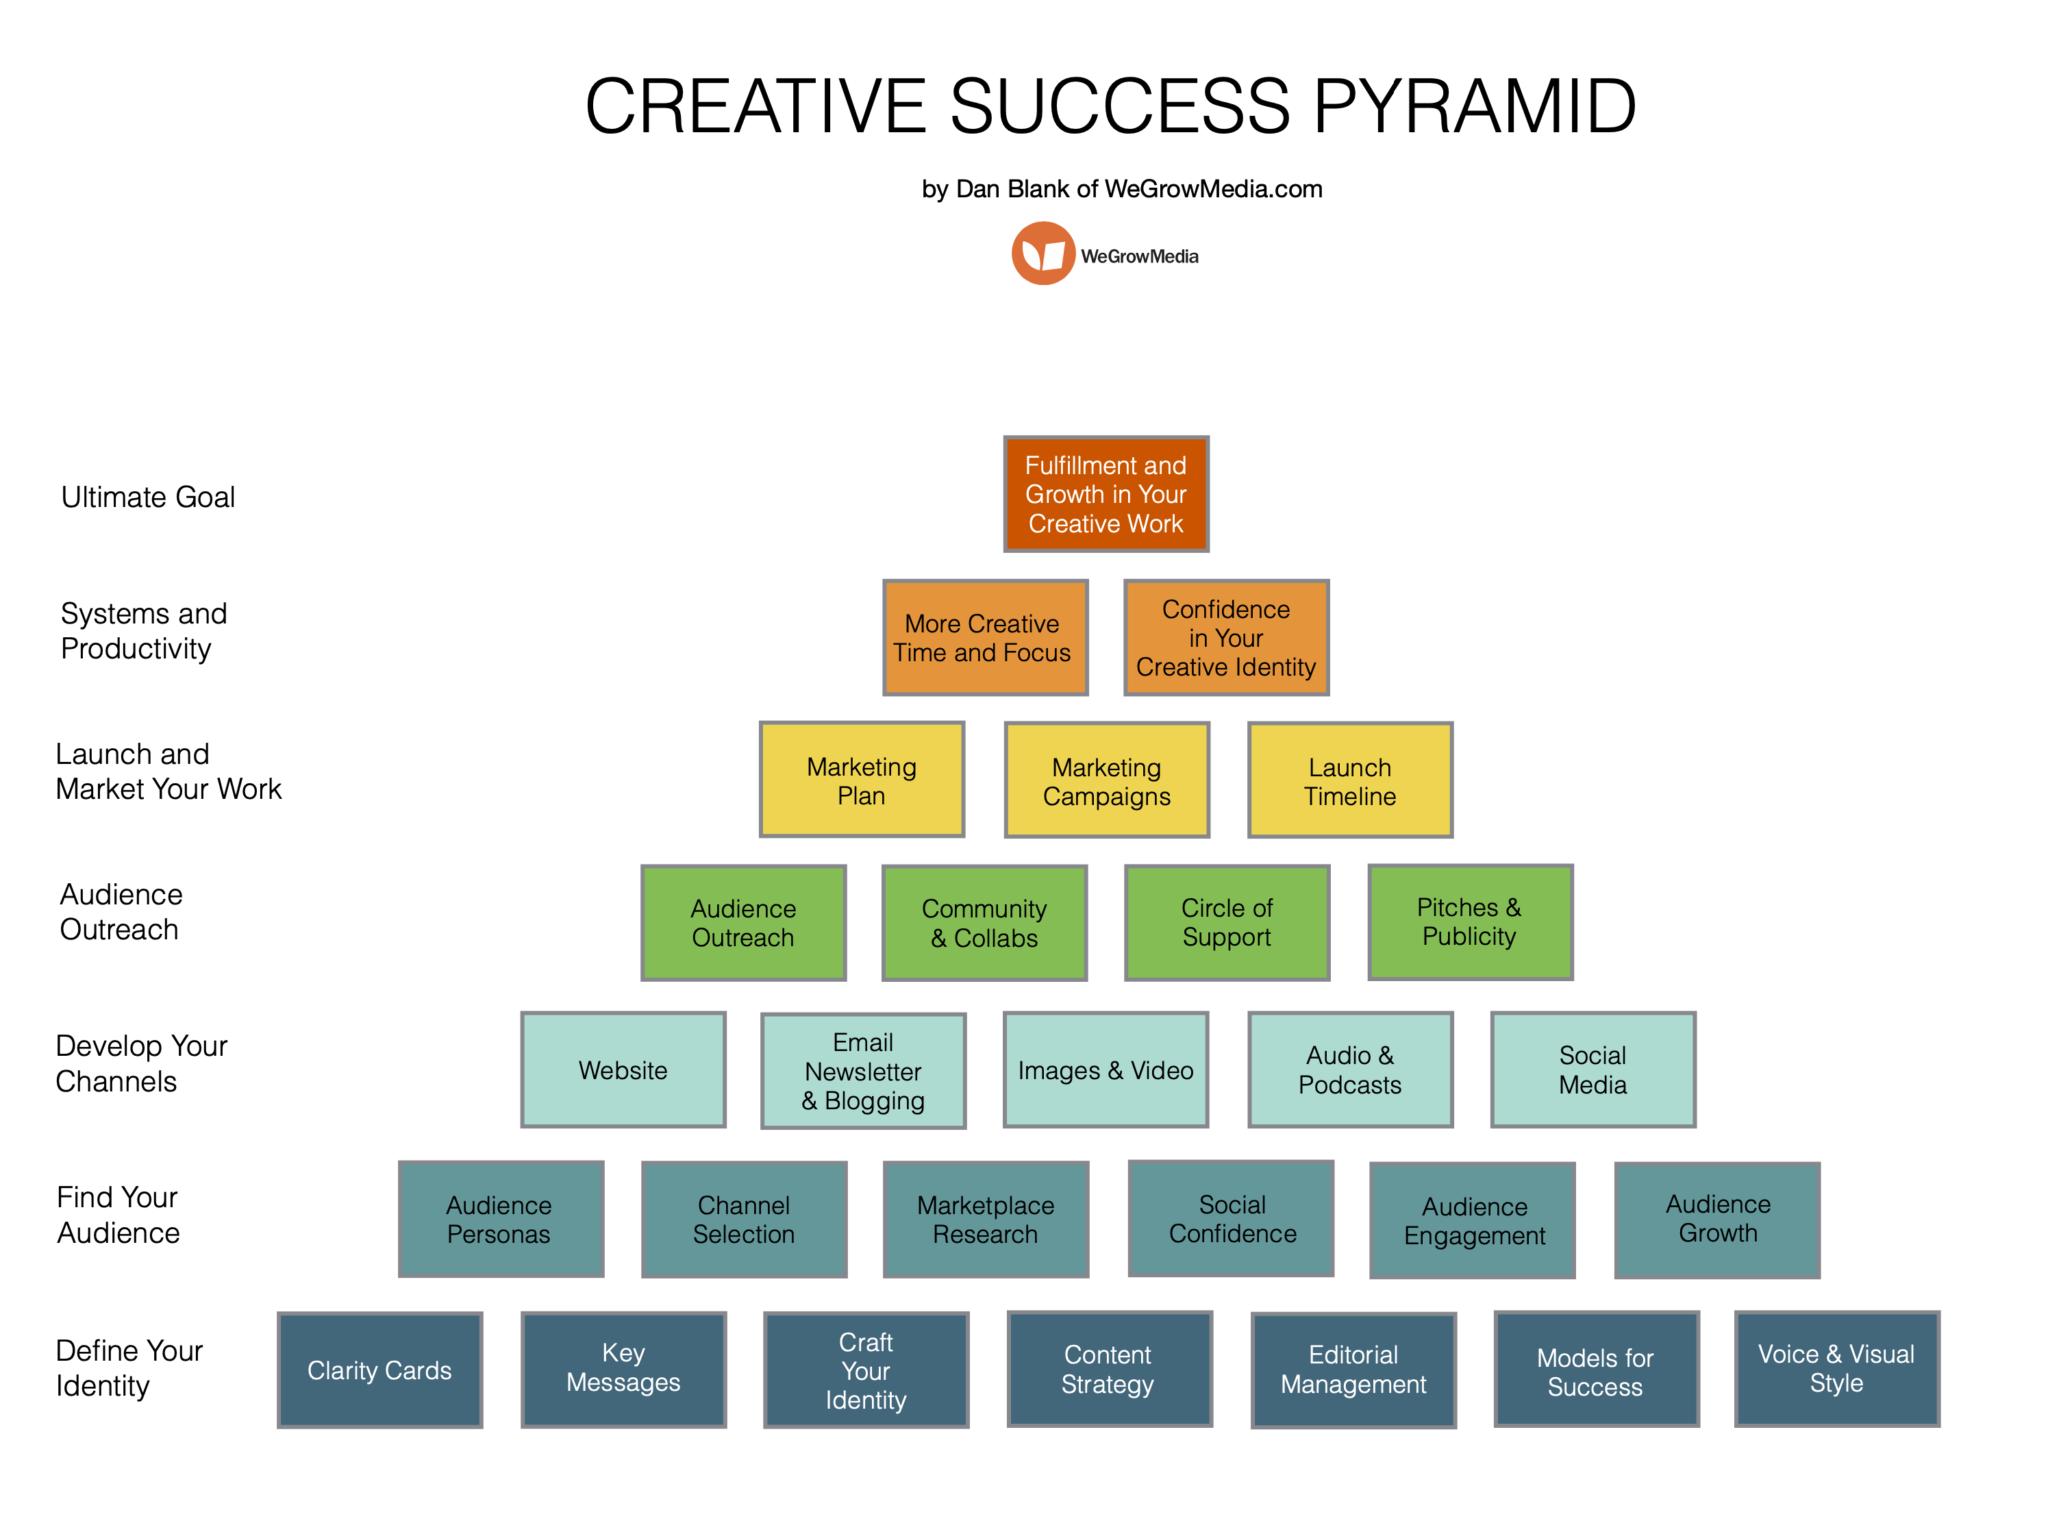 https://wegrowmedia.com/creative-success-pyramid/